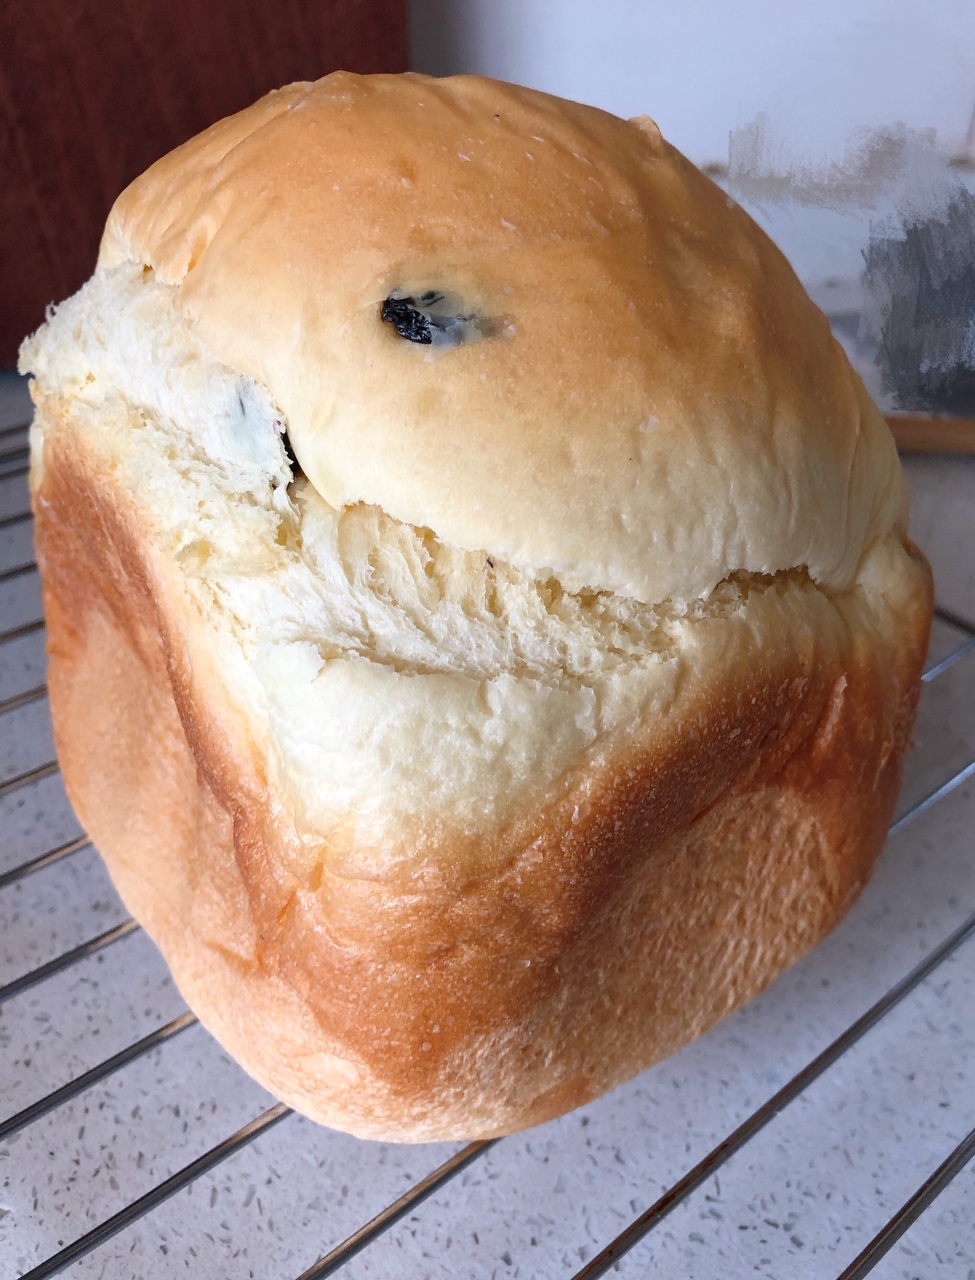 面包机版葡萄干面包的做法